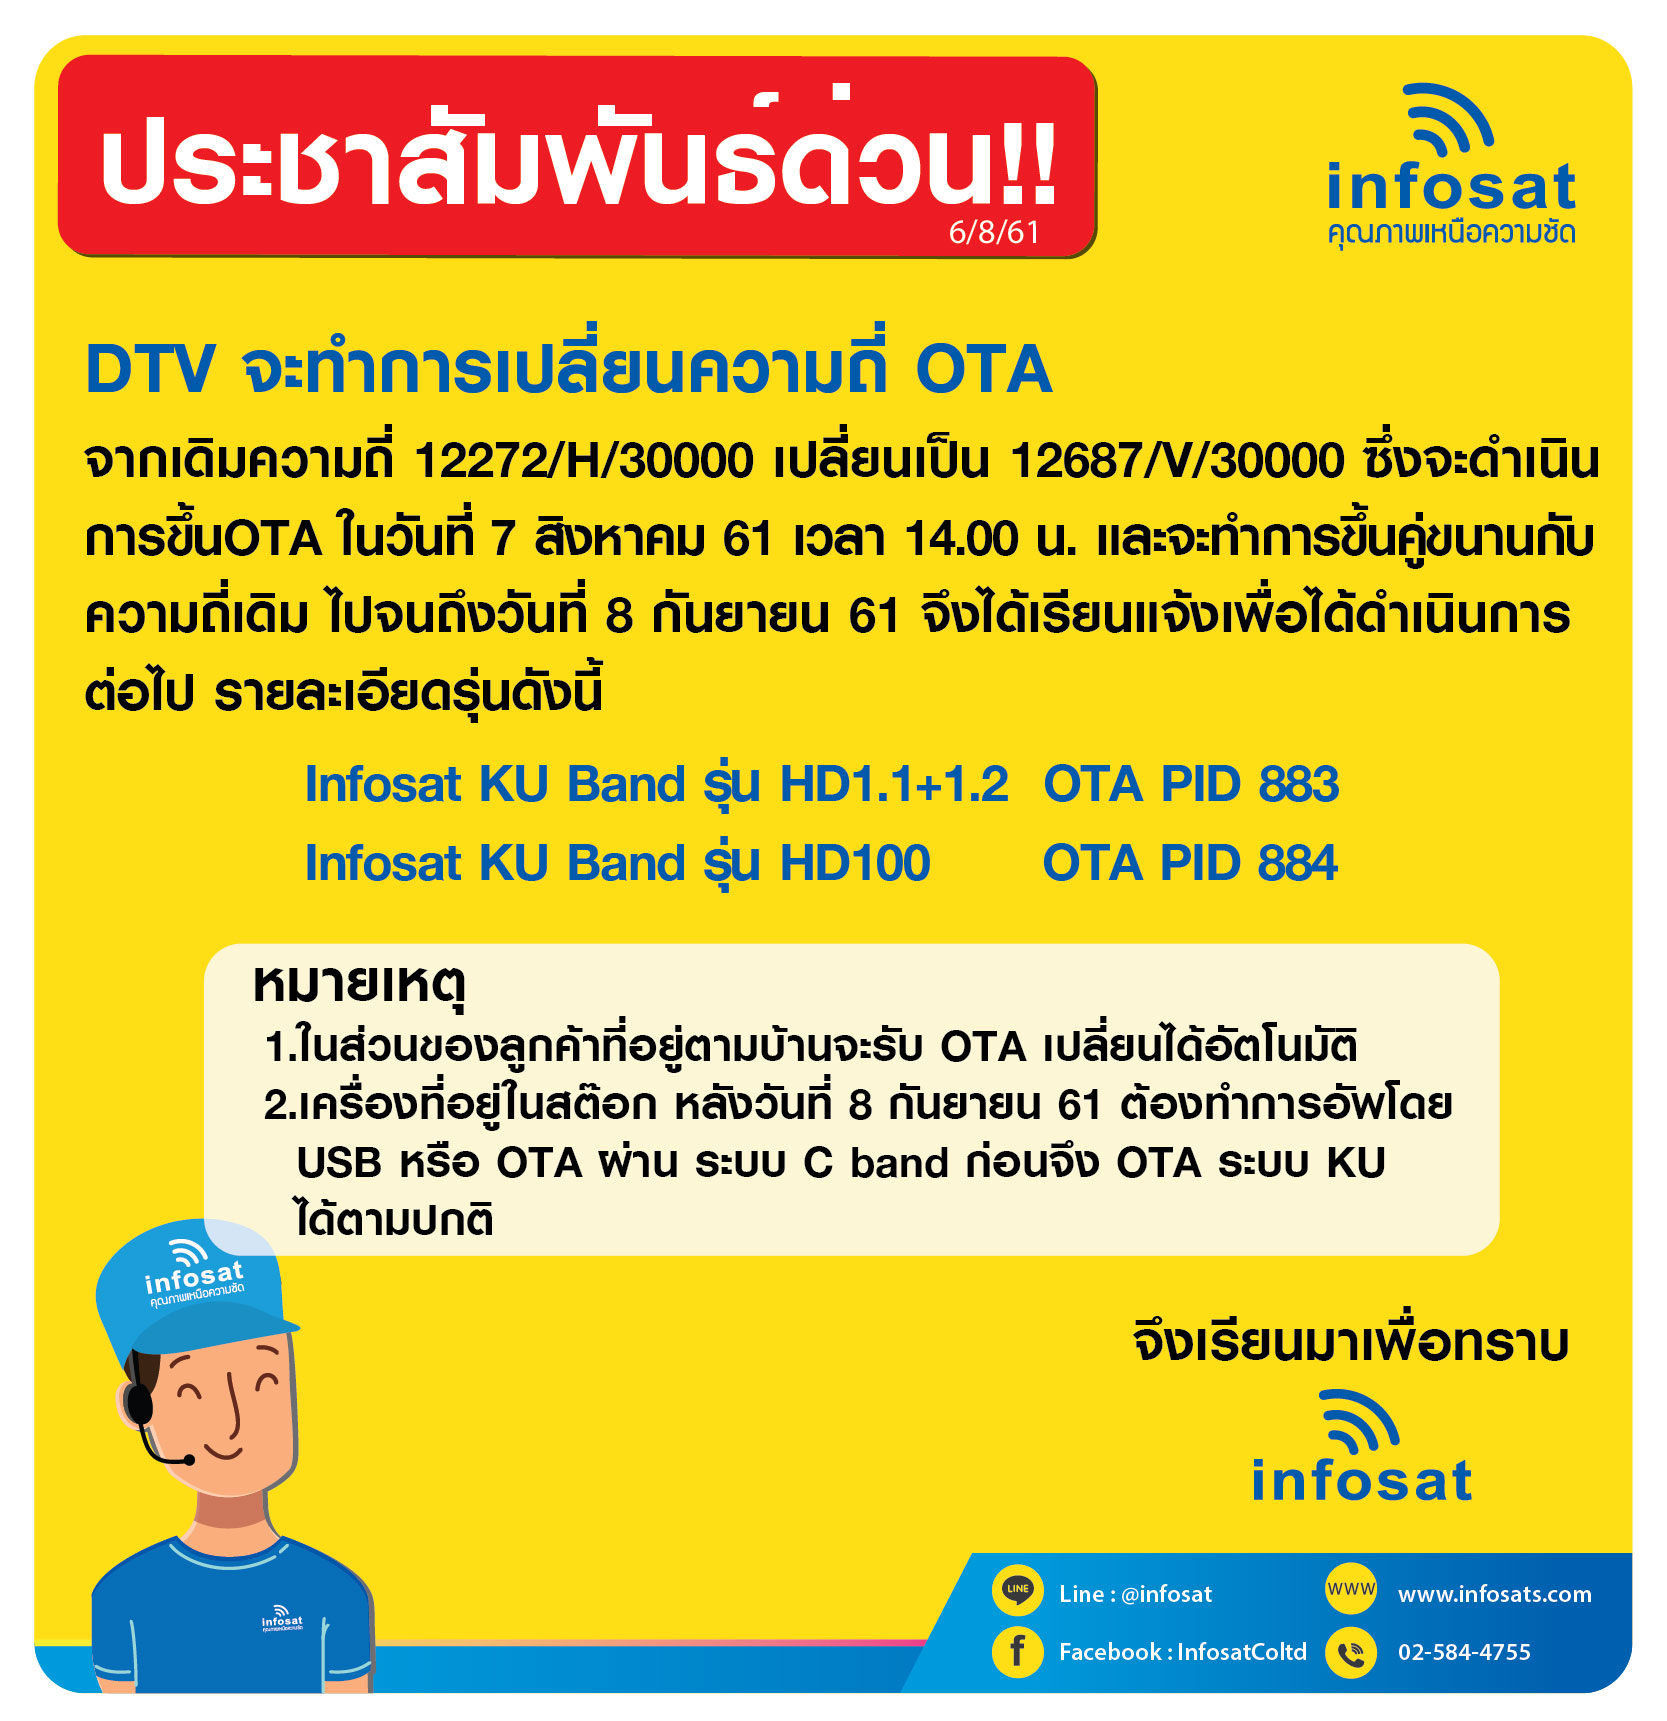 DTV จะทำการเปลี่ยนความถี่ OTA